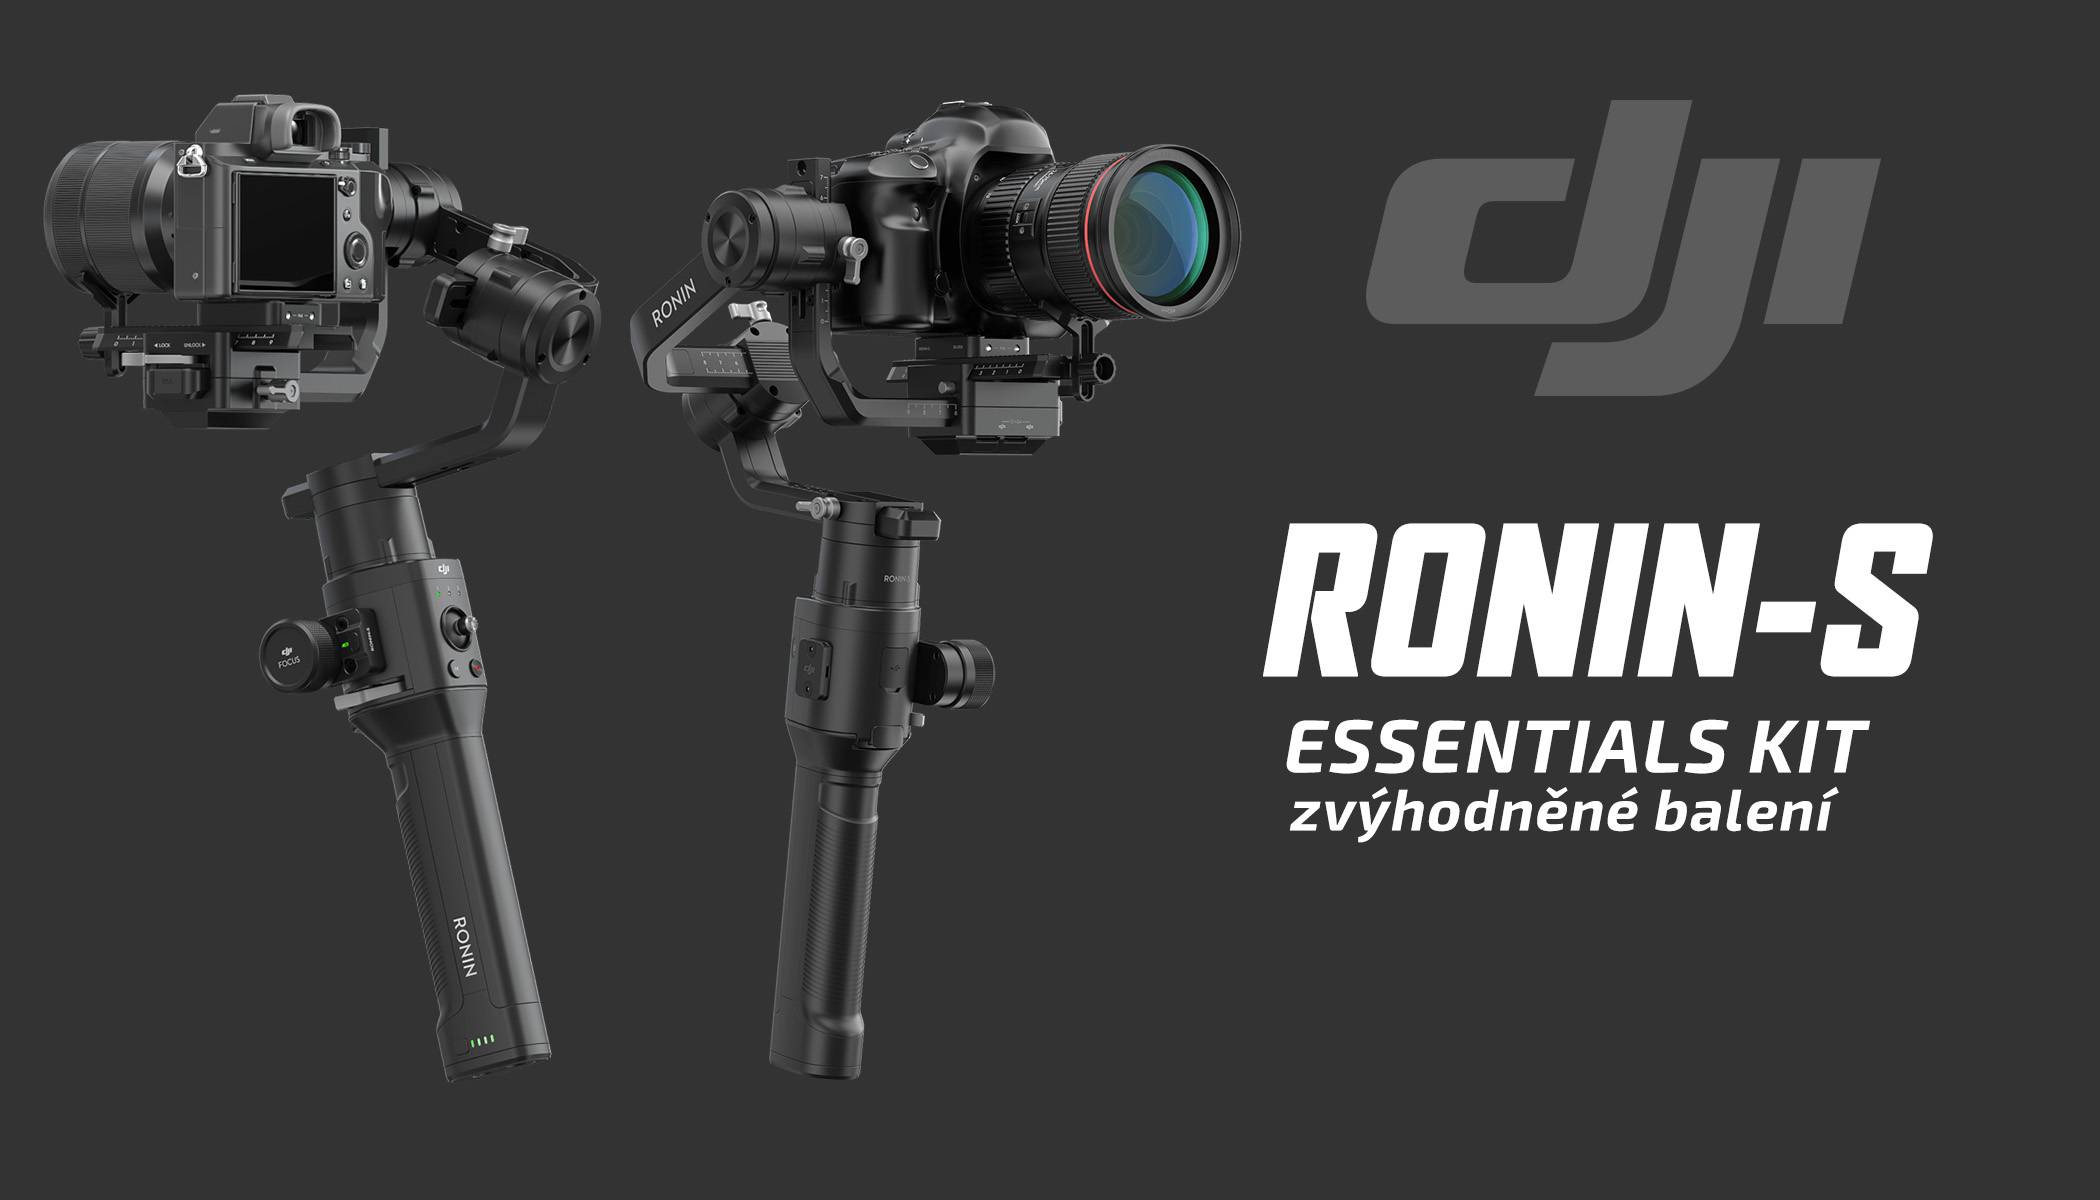 film-technika-dji-ronin-s-essentials-kit-zvýhodněné-balení